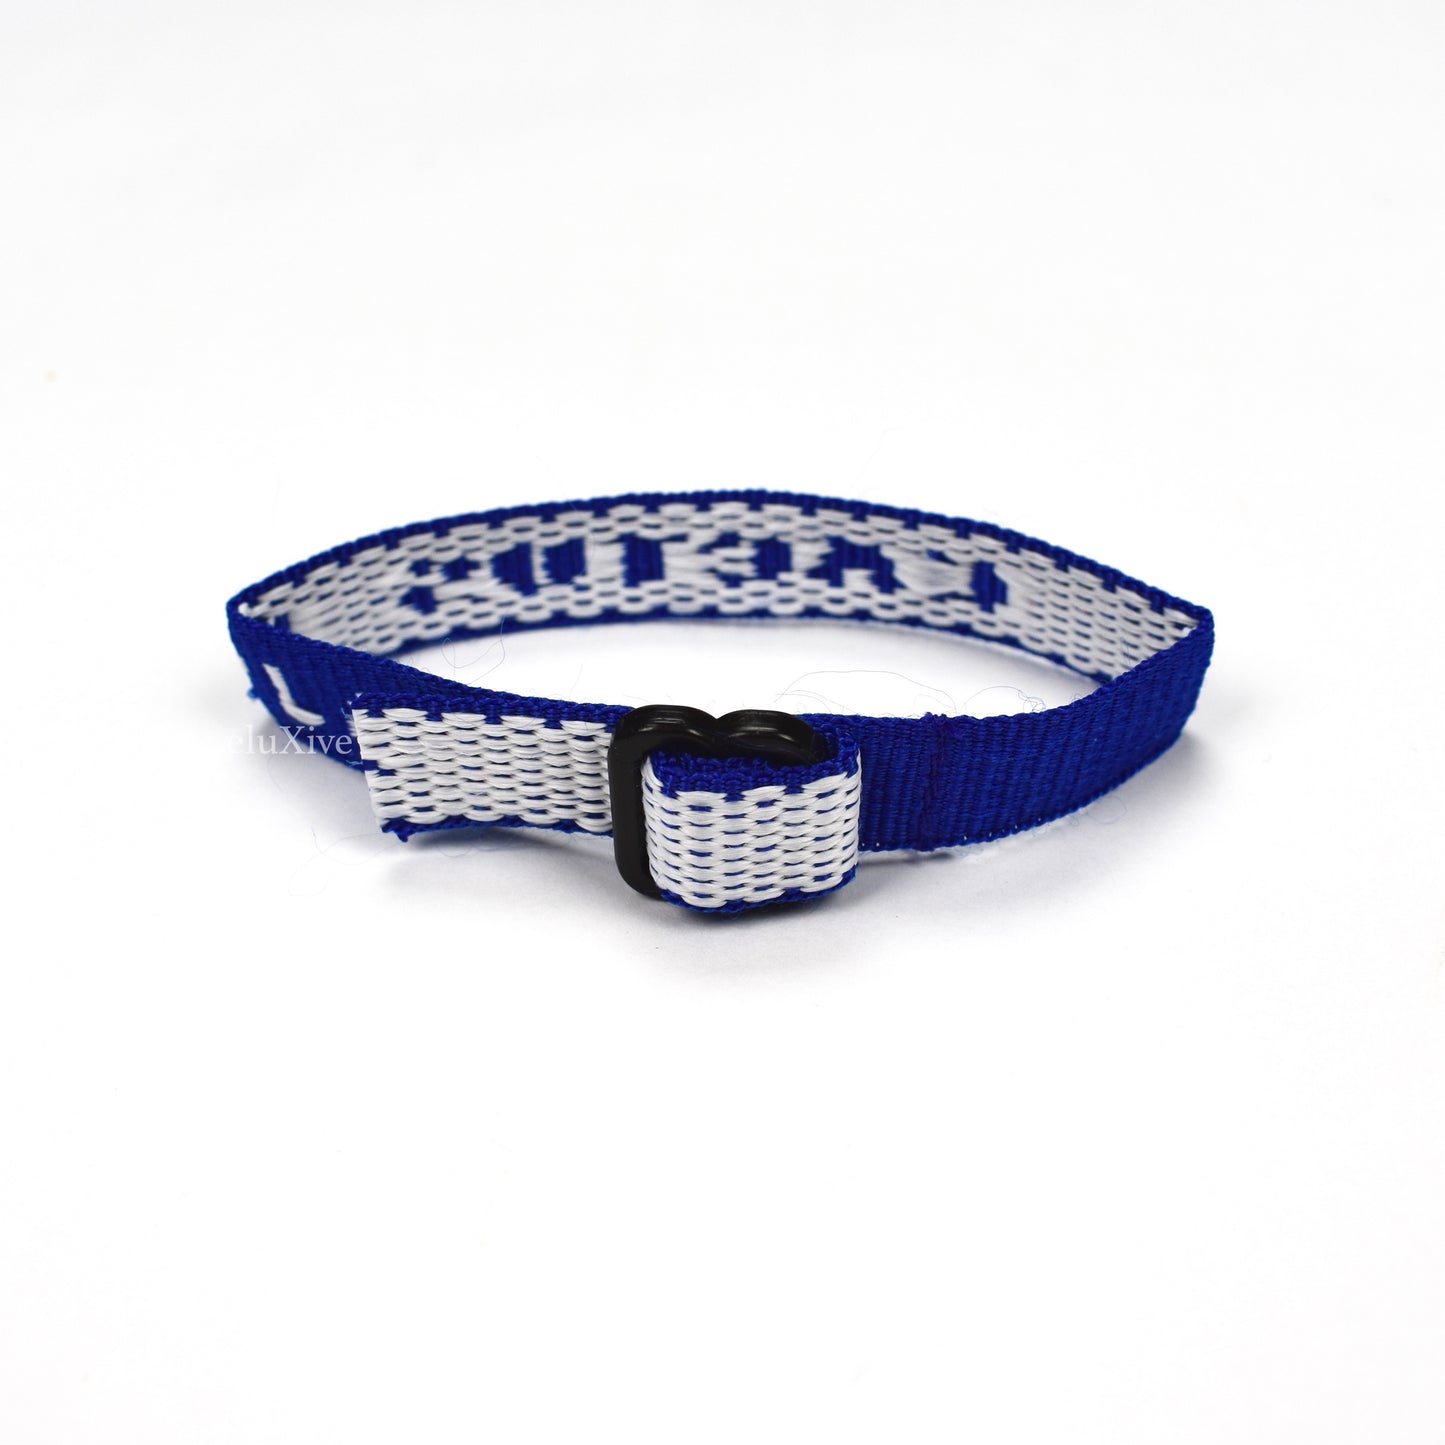 Cactus Plant Flea Market - Blue Cult ID Bracelet